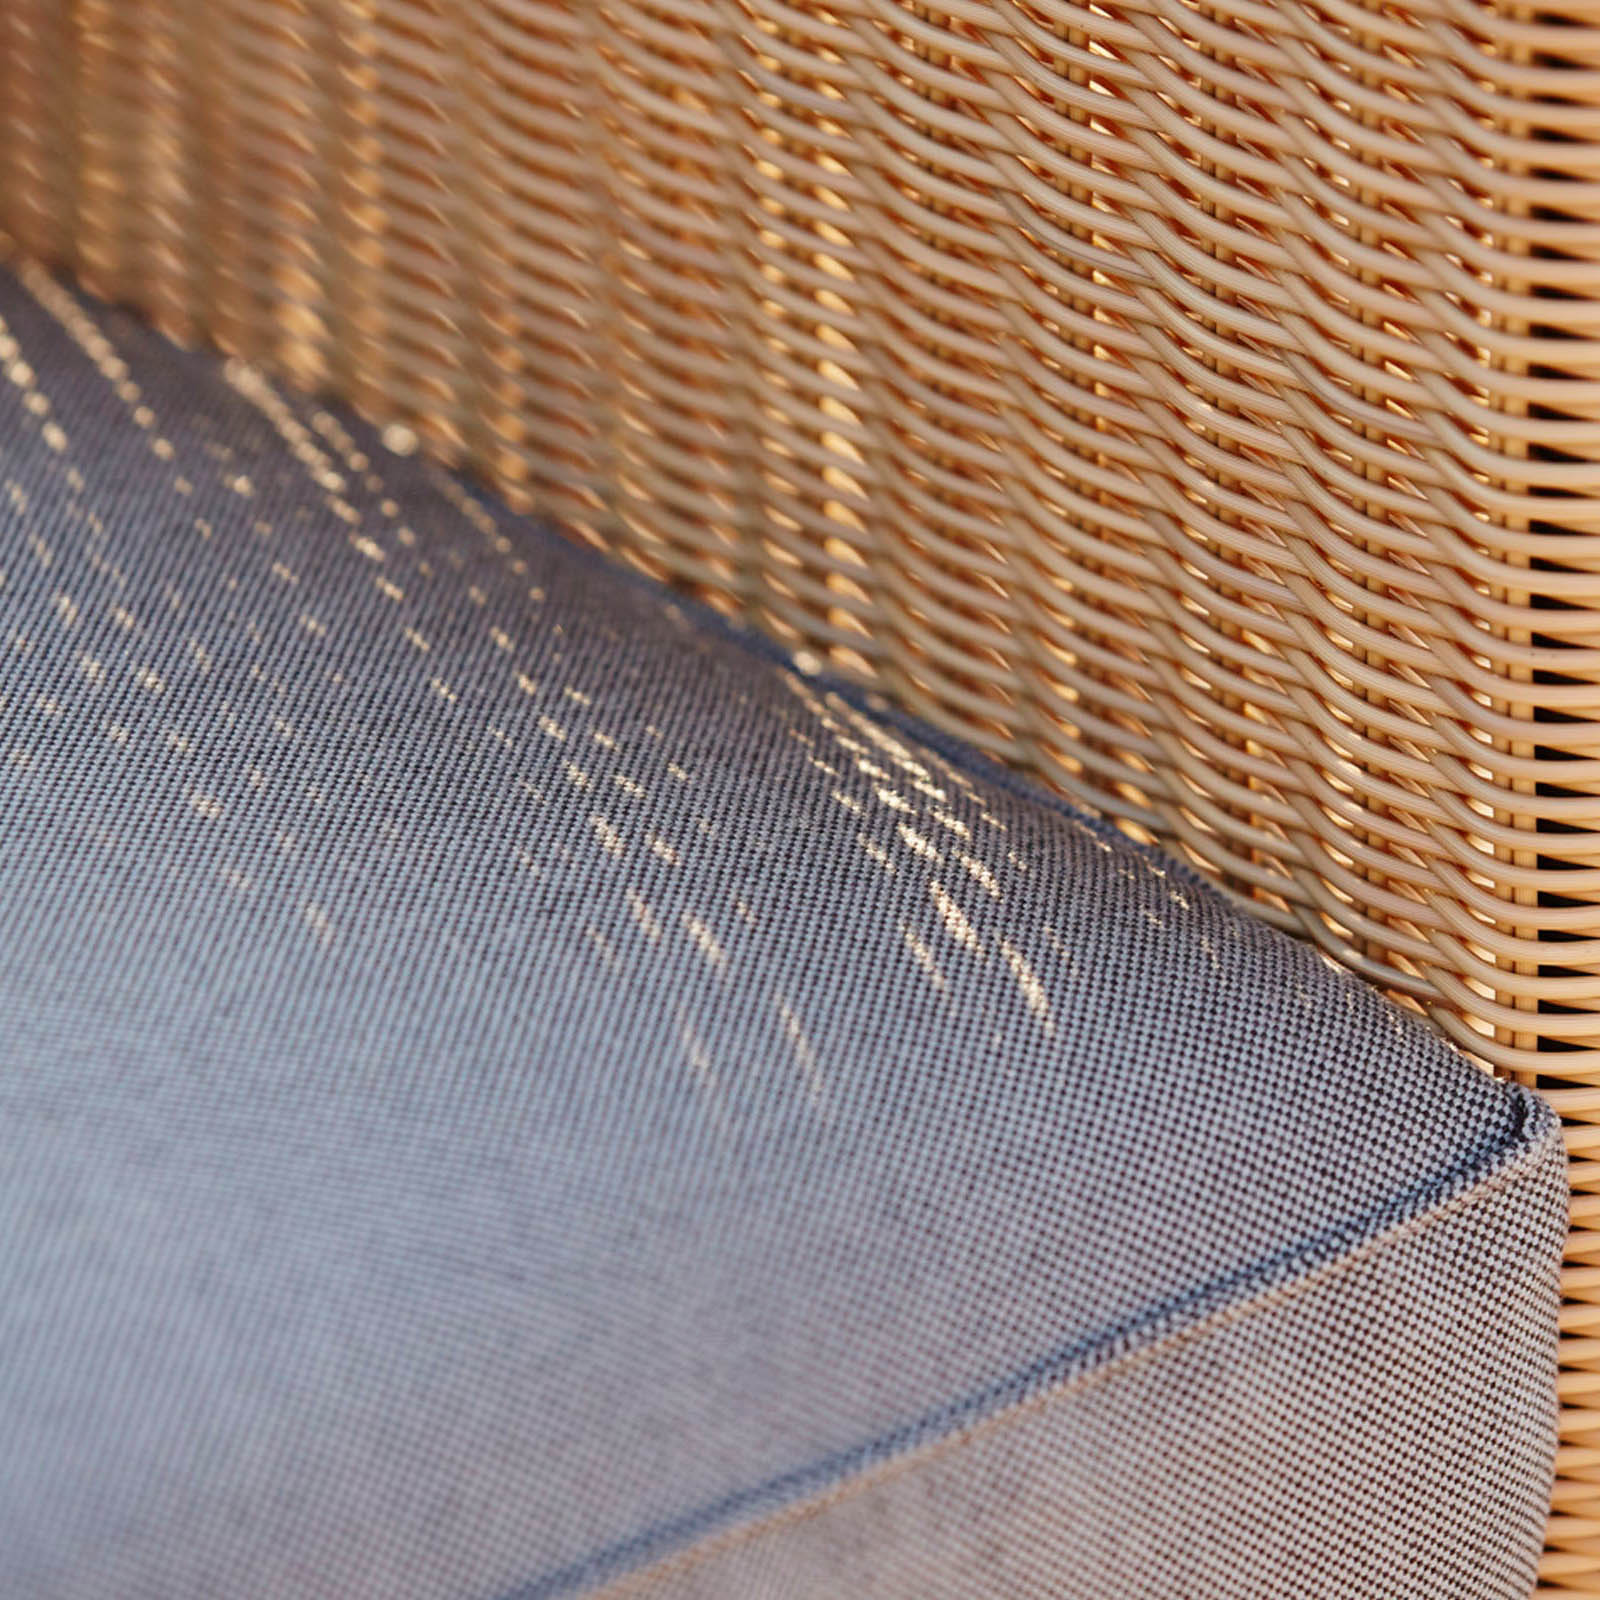 Chester 3-Sitzer Sofa aus Cane-line Weave in Natural mit Kissen aus Cane-line Natté mit QuickDry in White